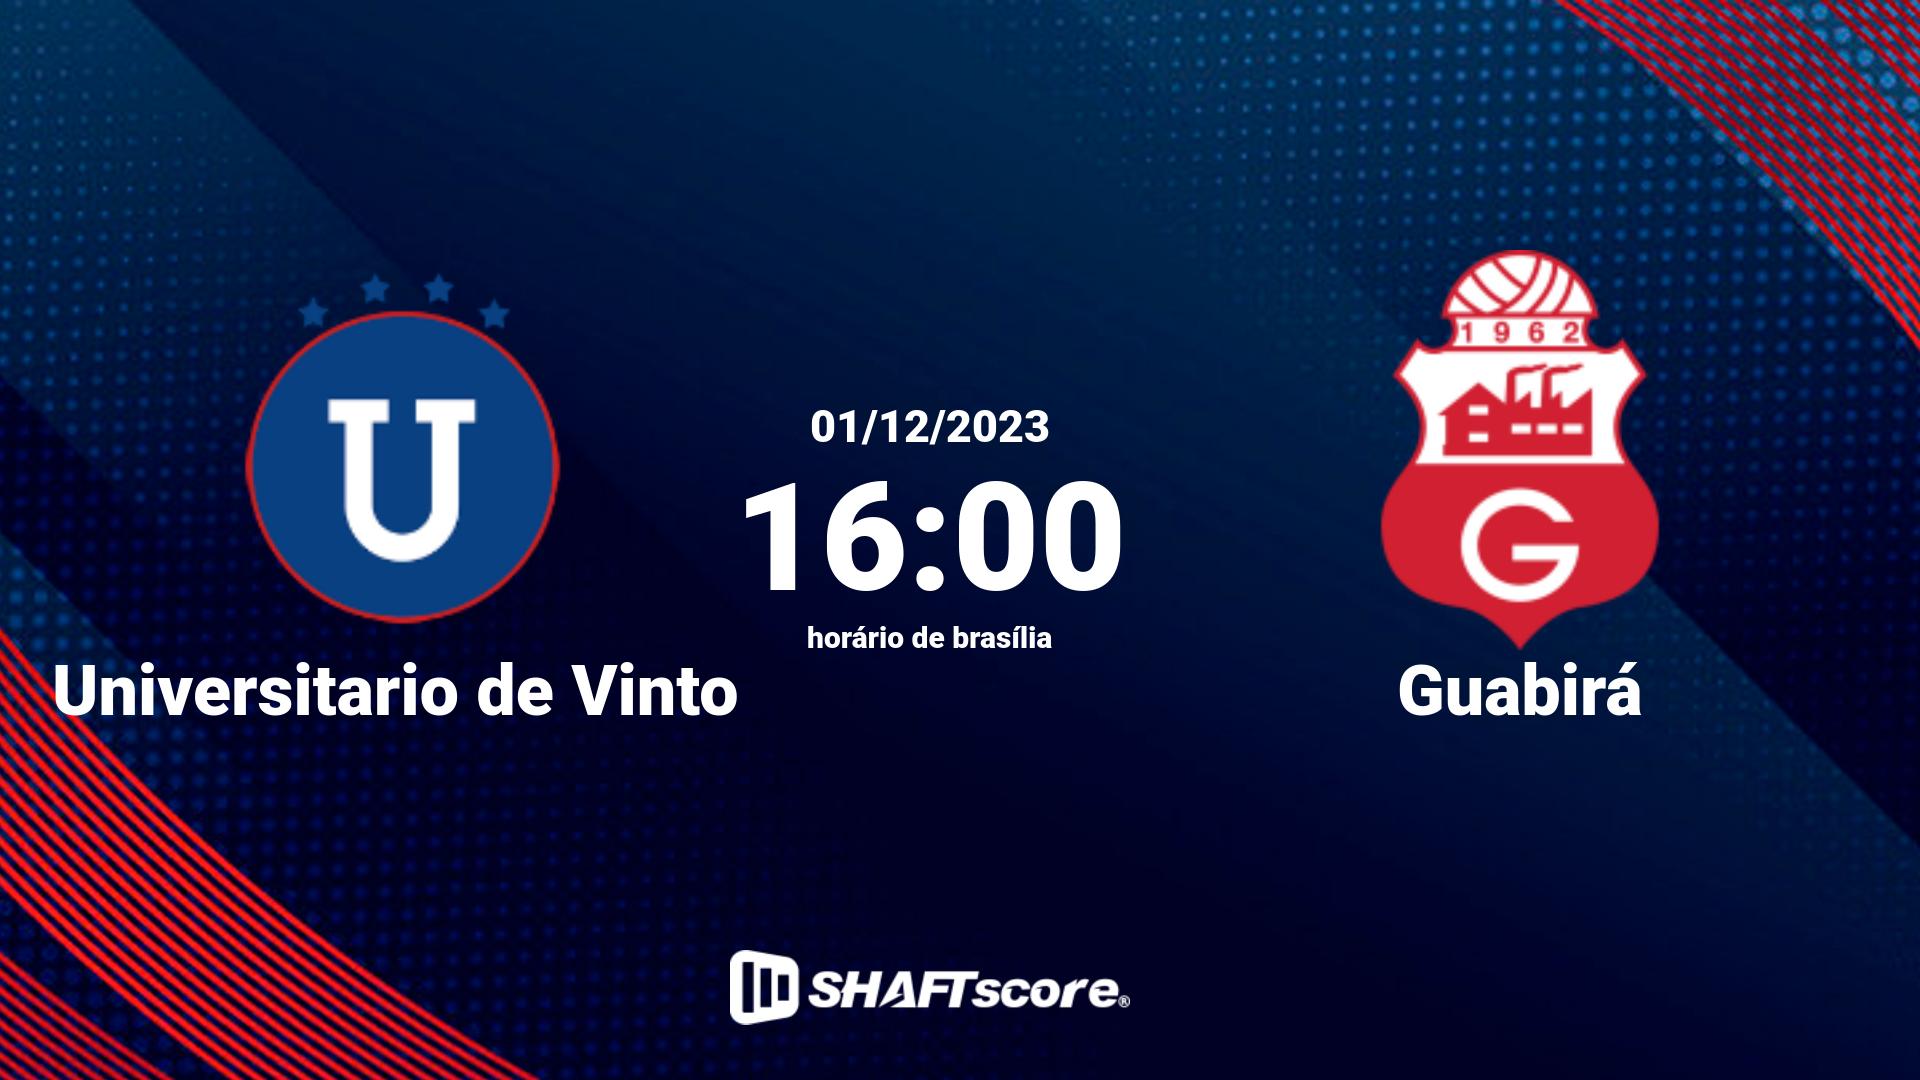 Estatísticas do jogo Universitario de Vinto vs Guabirá 01.12 16:00